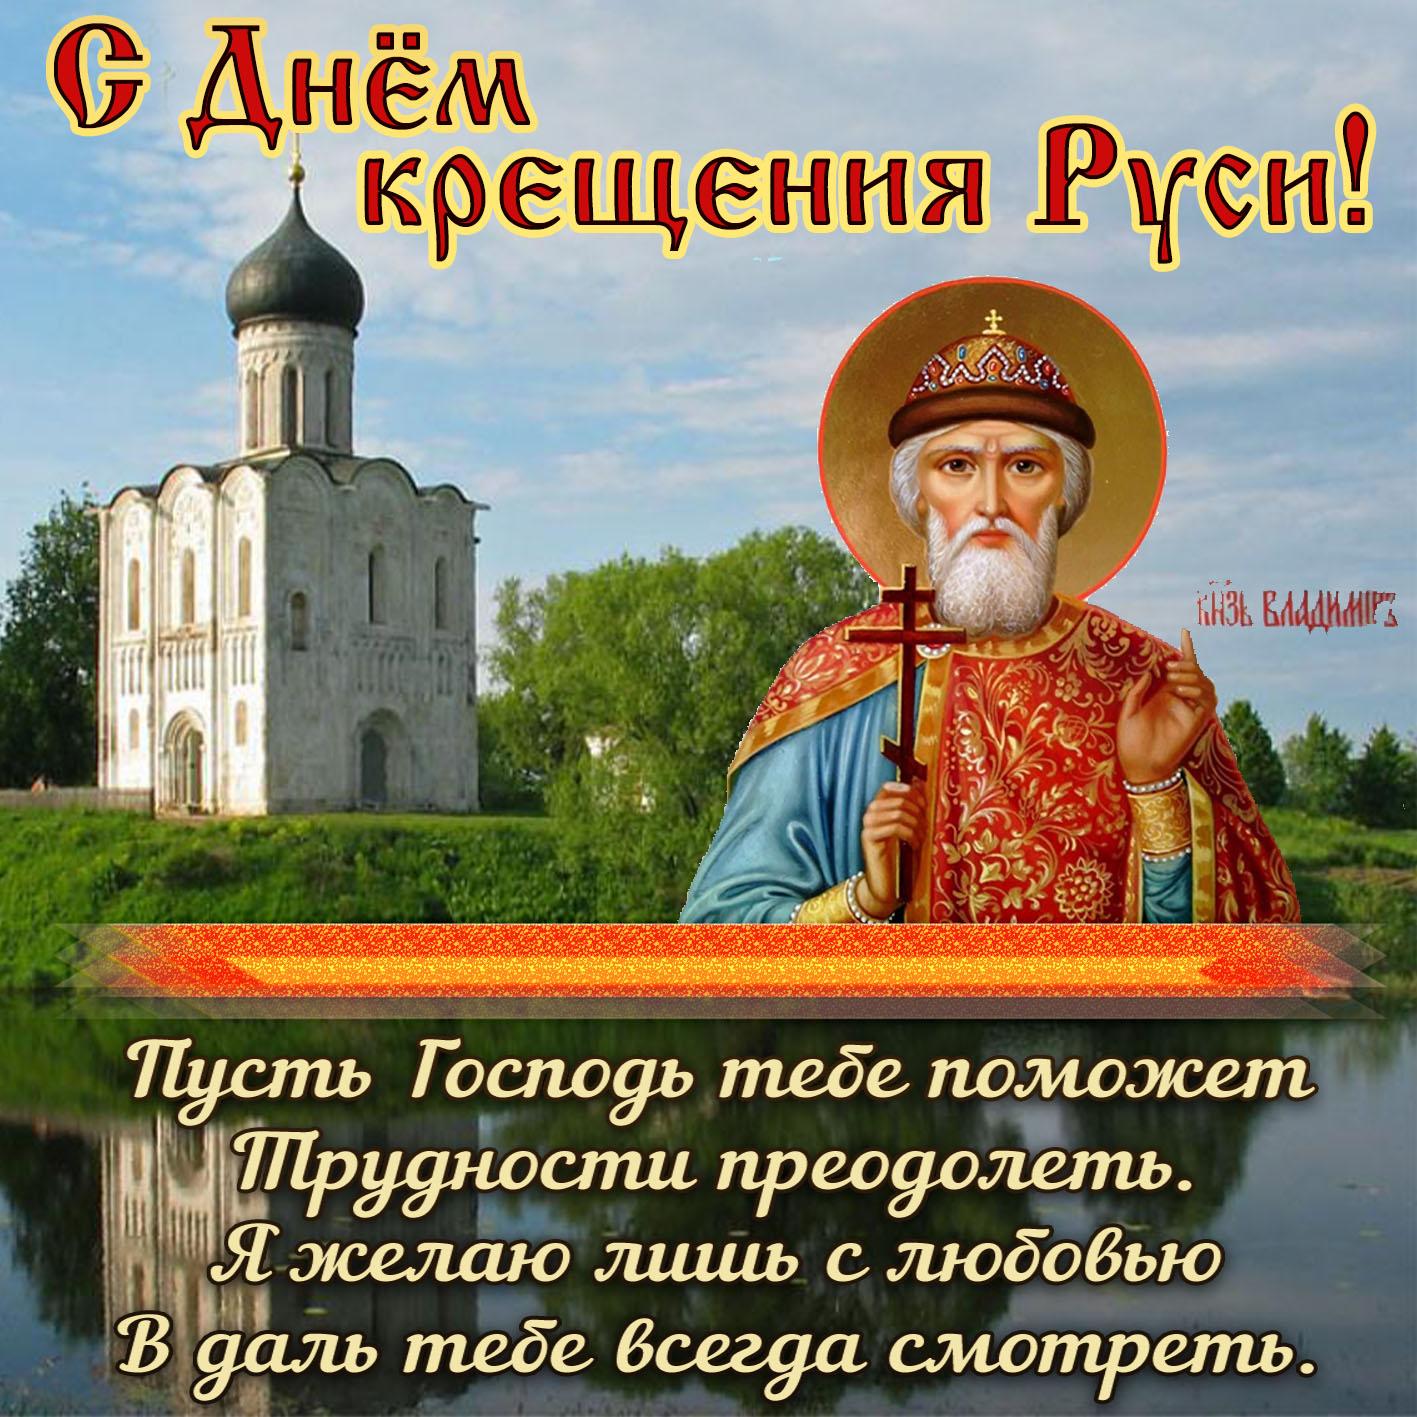 Фото Крещение Руси 28 июля 2022: новые красивые открытки и поздравления в стихах для православных 7